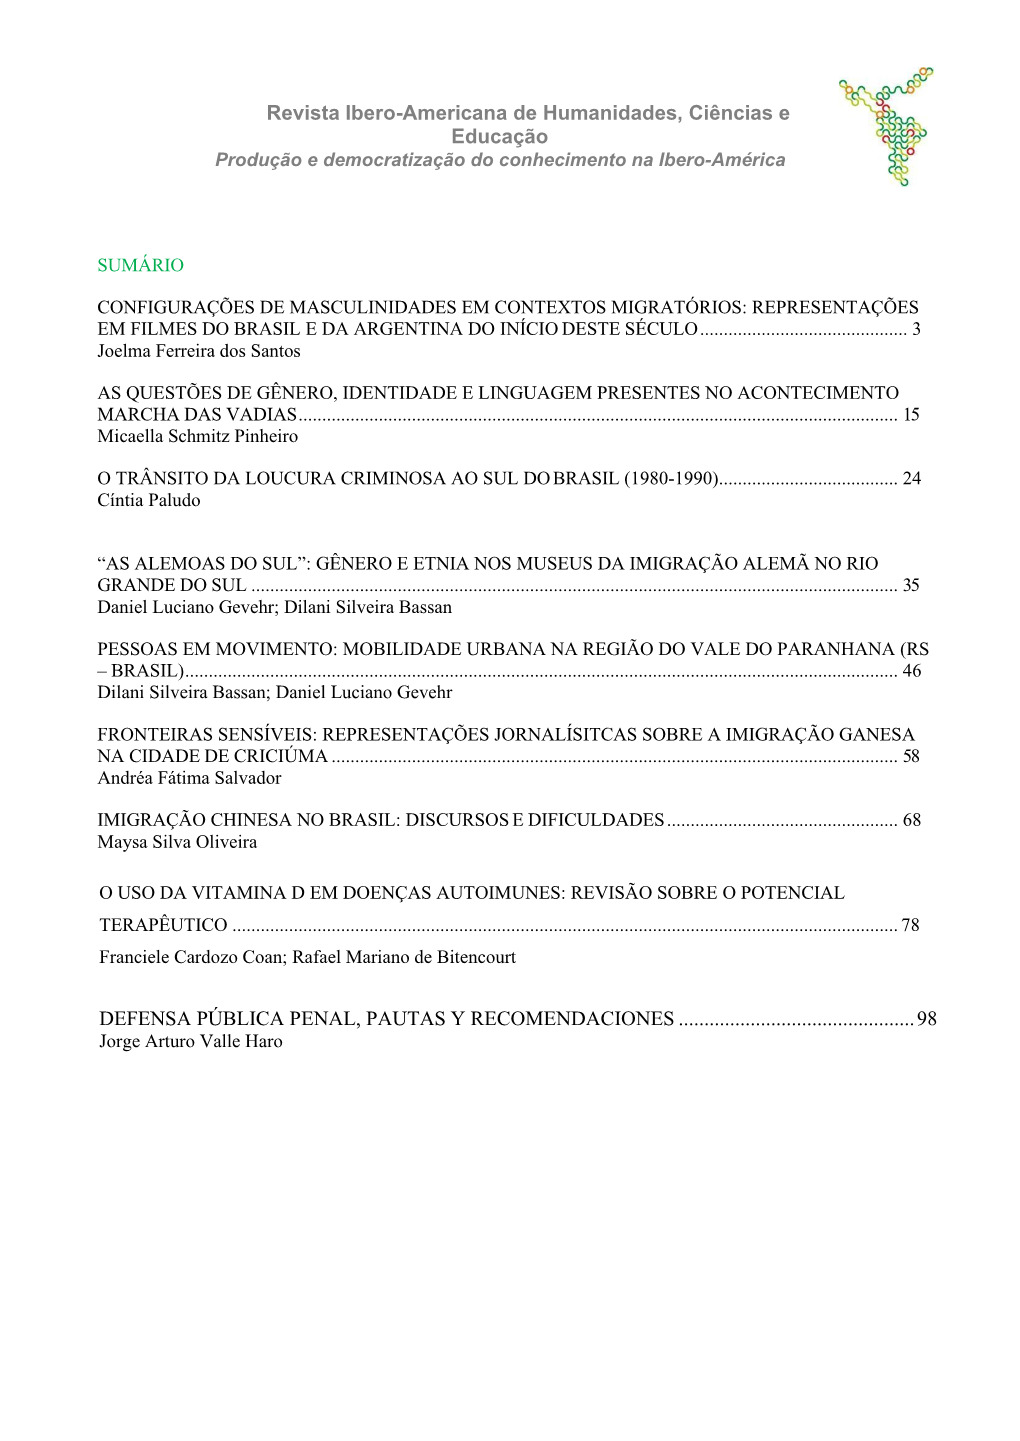 Revista Ibero-Americana De Humanidades, Ciências E Educação Produção E Democratização Do Conhecimento Na Ibero-América